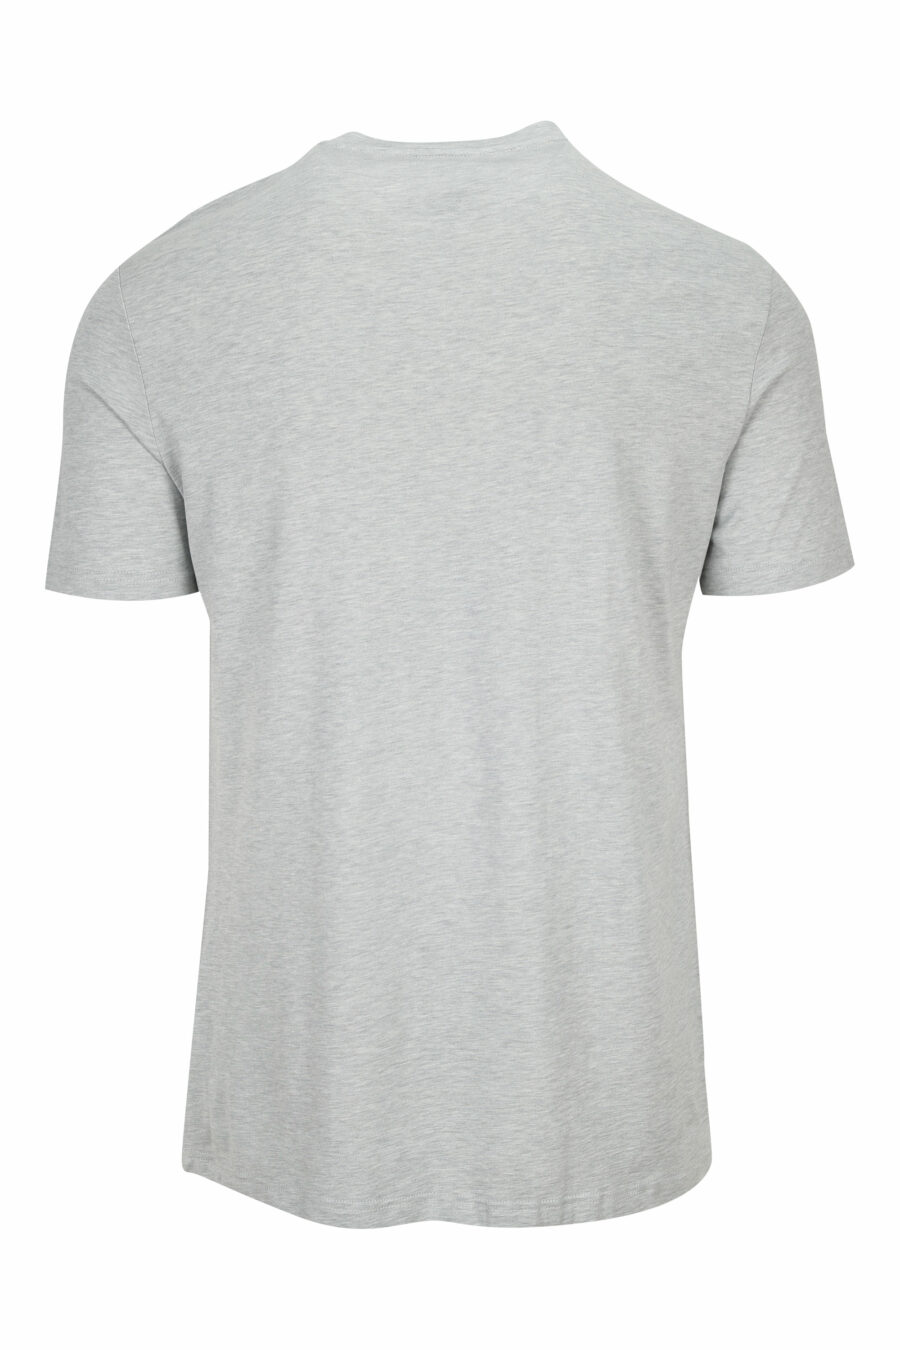 Camiseta gris con minilogo negro - 8032674525109 1